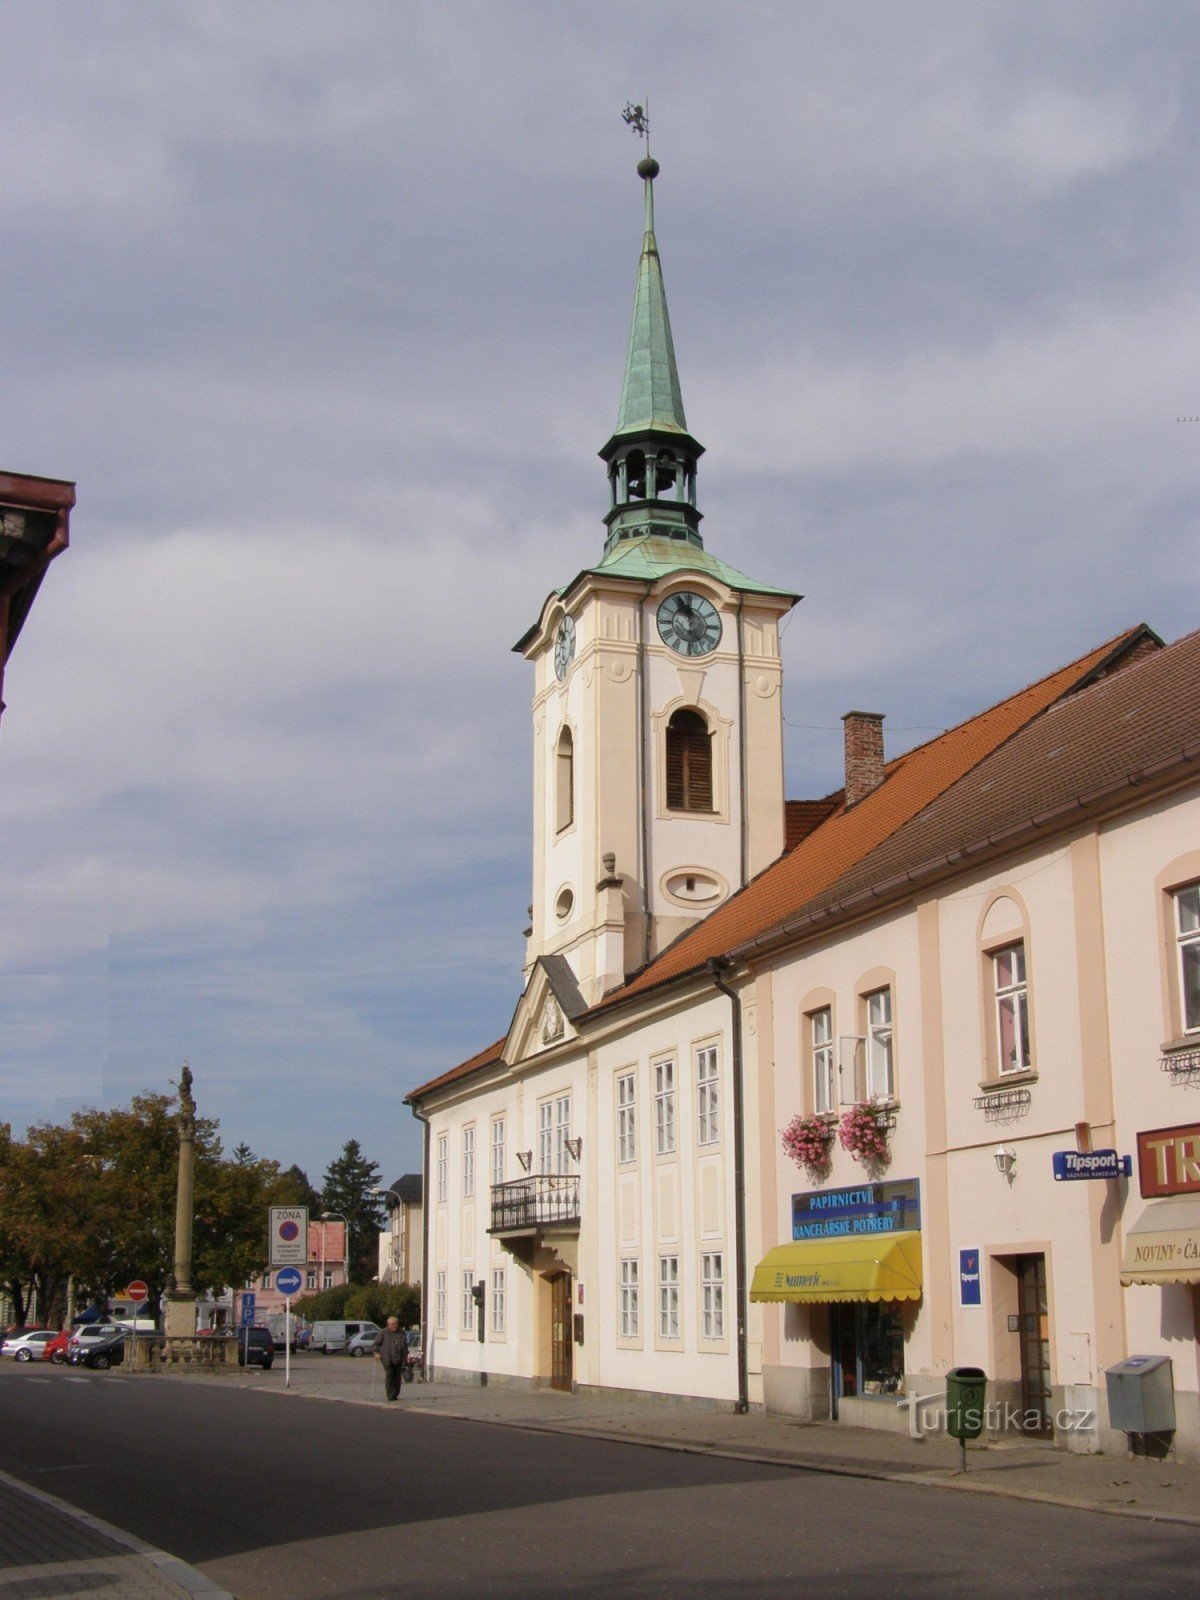 Kostelec nad Orlicí - Altes Rathaus